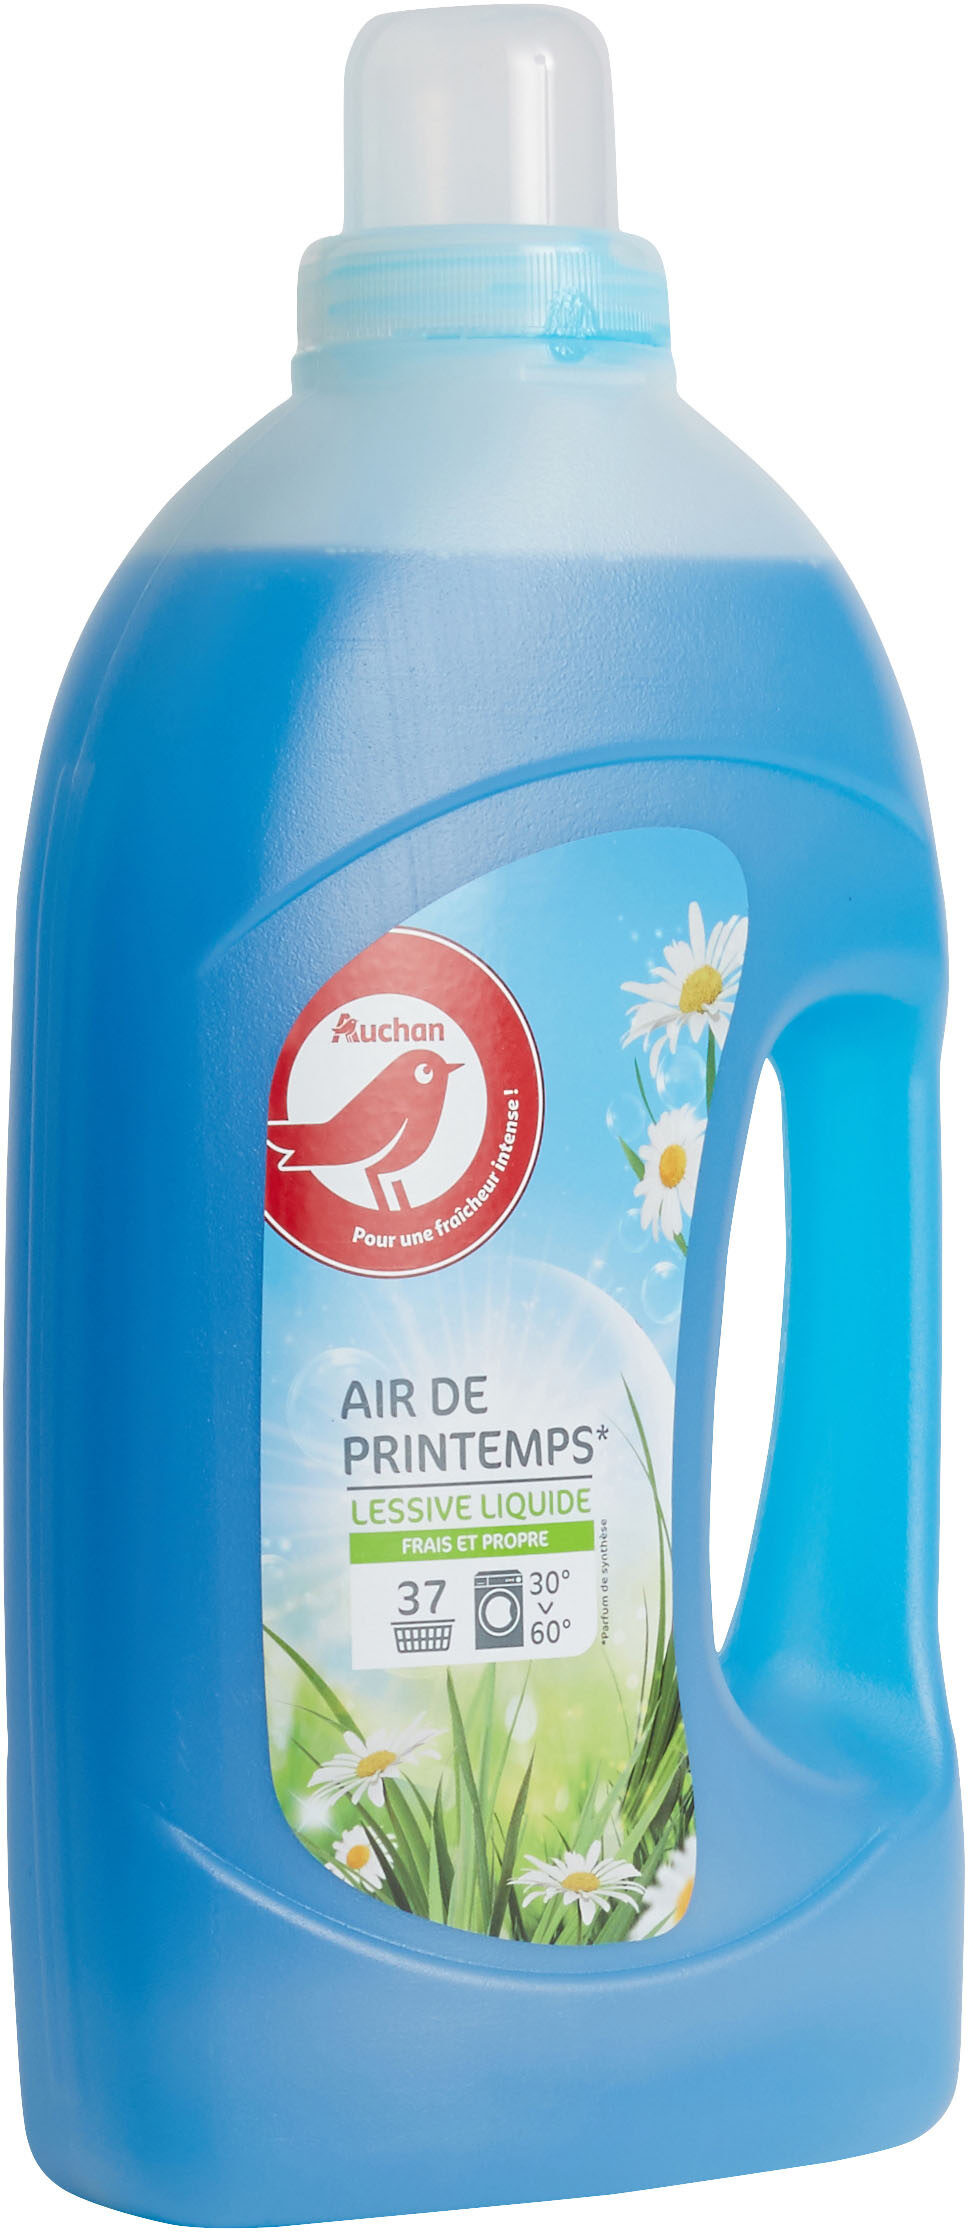 AUCHAN LESSIVE LIQUIDE FRESH et CLEAN AIR DE PRINTEMPS 37 DOSES 2L - Product - fr